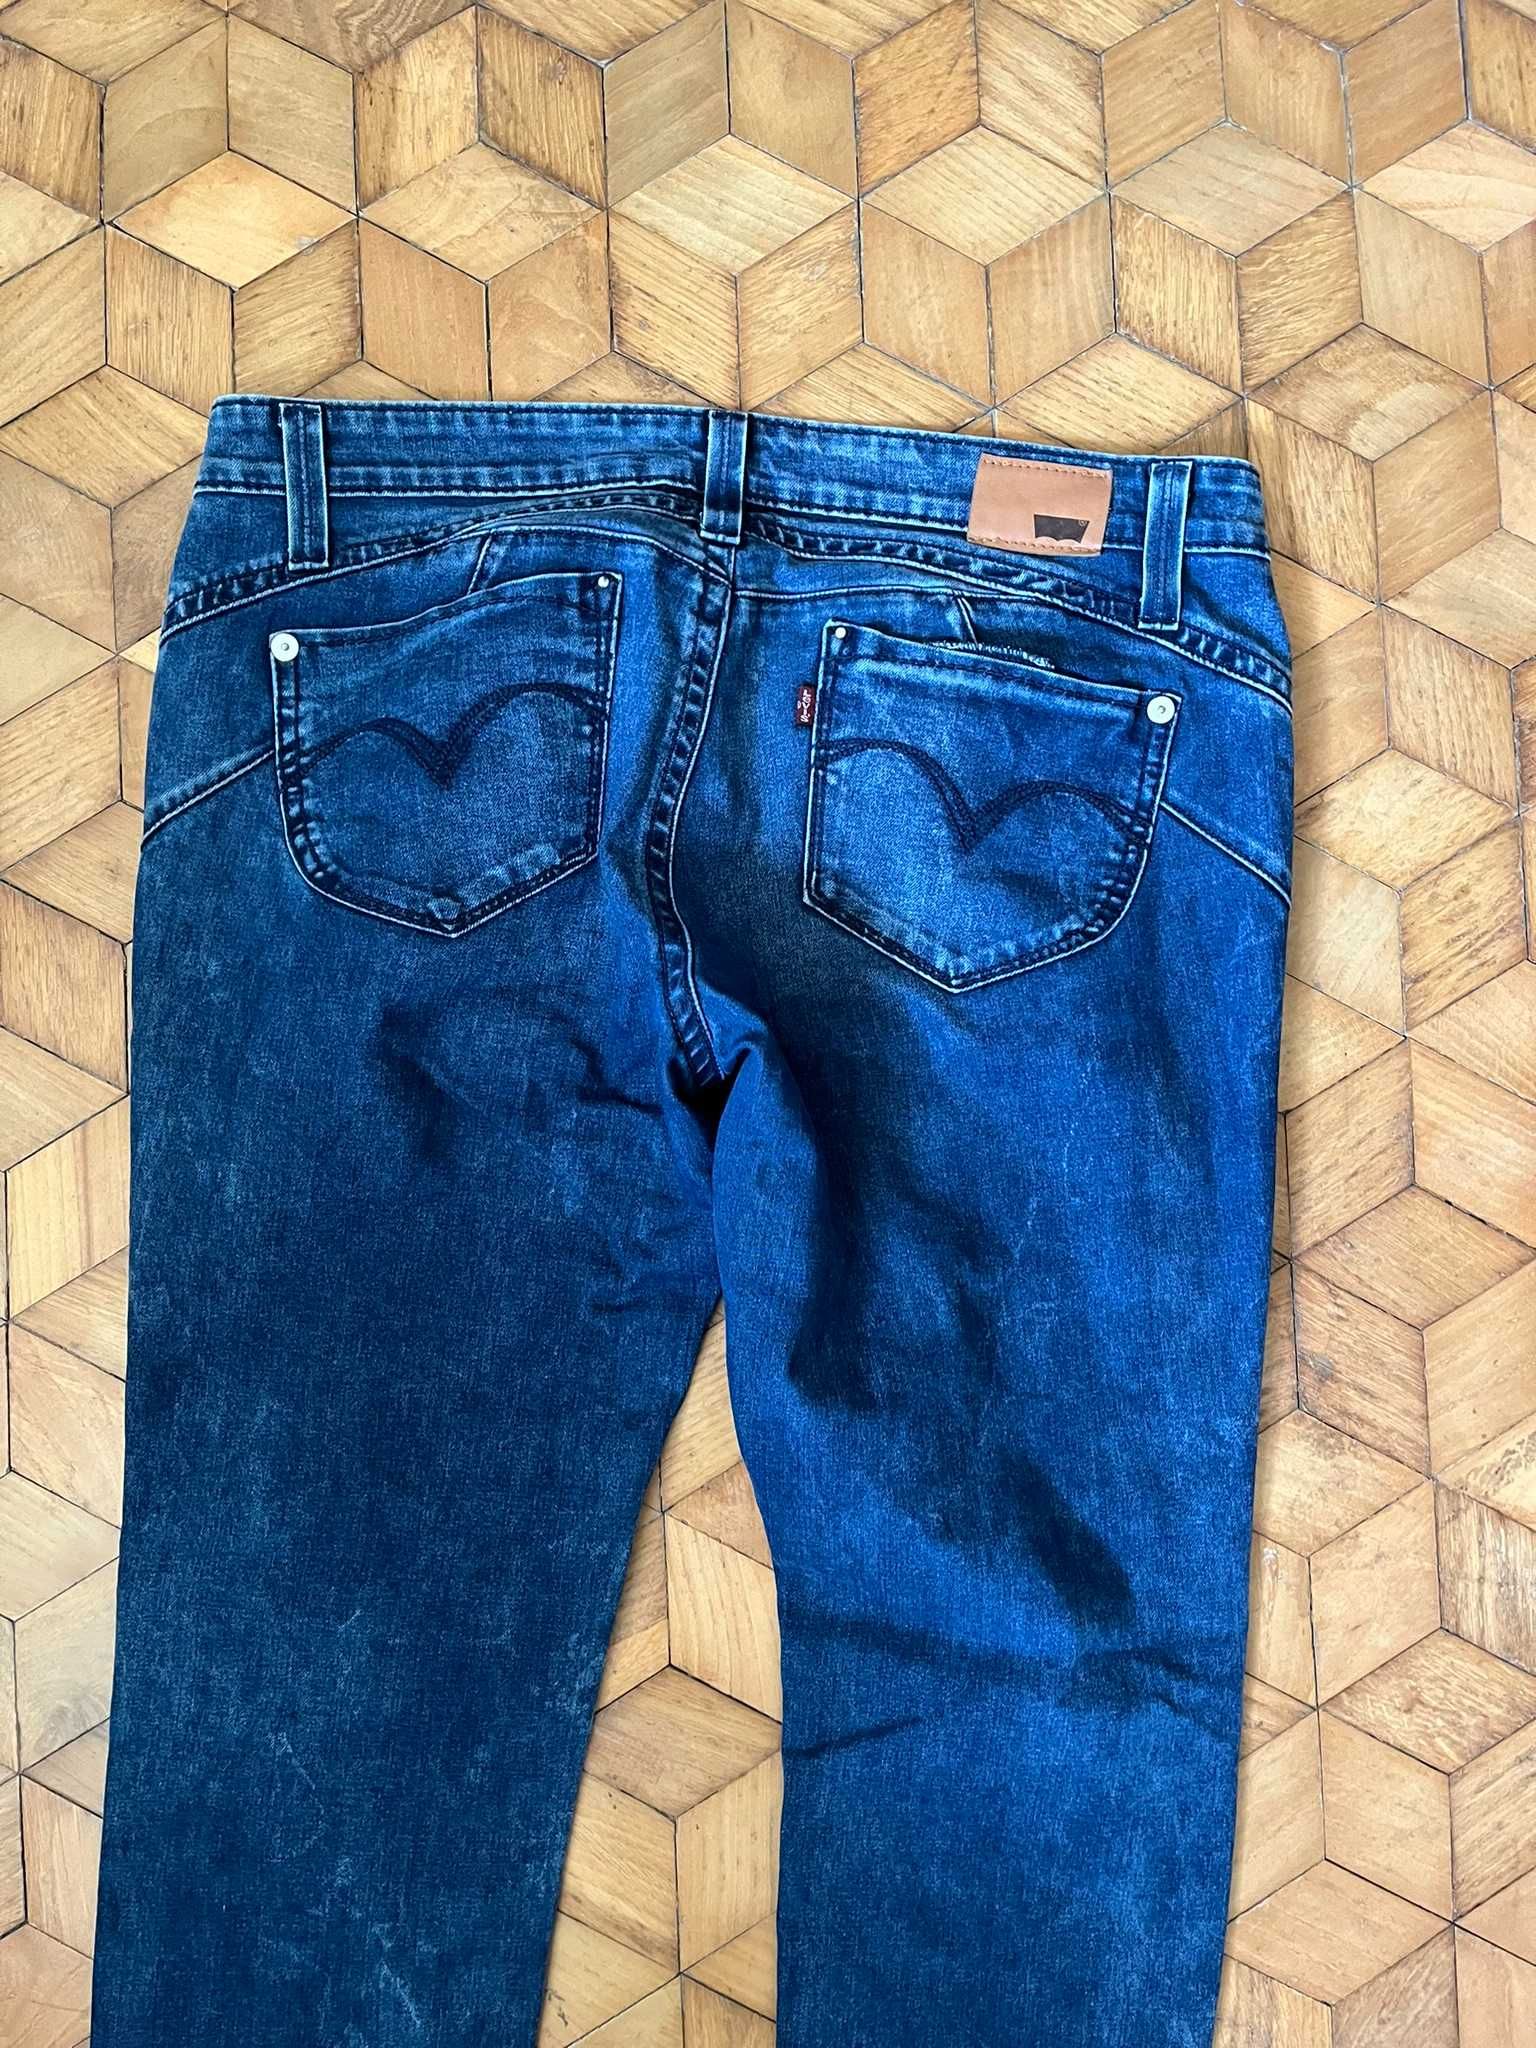 Spodnie jeans damskie Demi Curve W32/L34 proste skinny